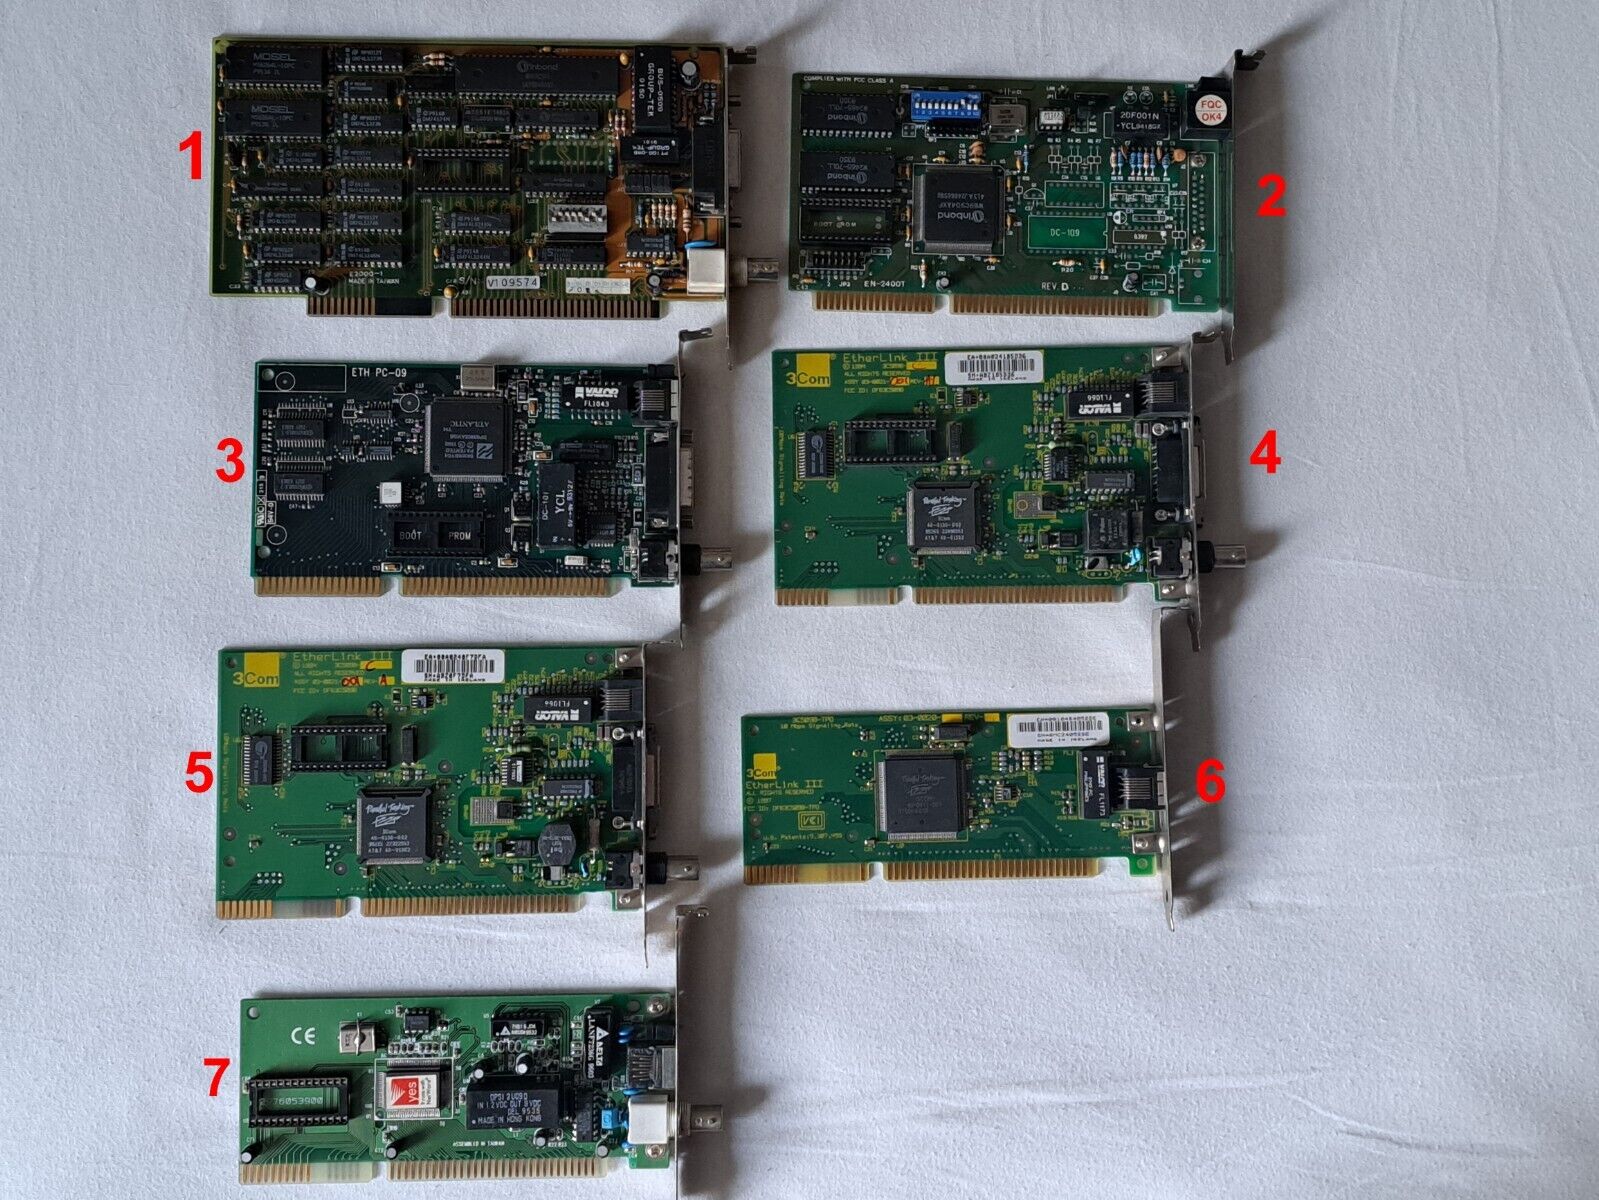 Lot of 7pcs.Vintage Random Computer LAN Ethernet Network Cards ISA 16-Bit.